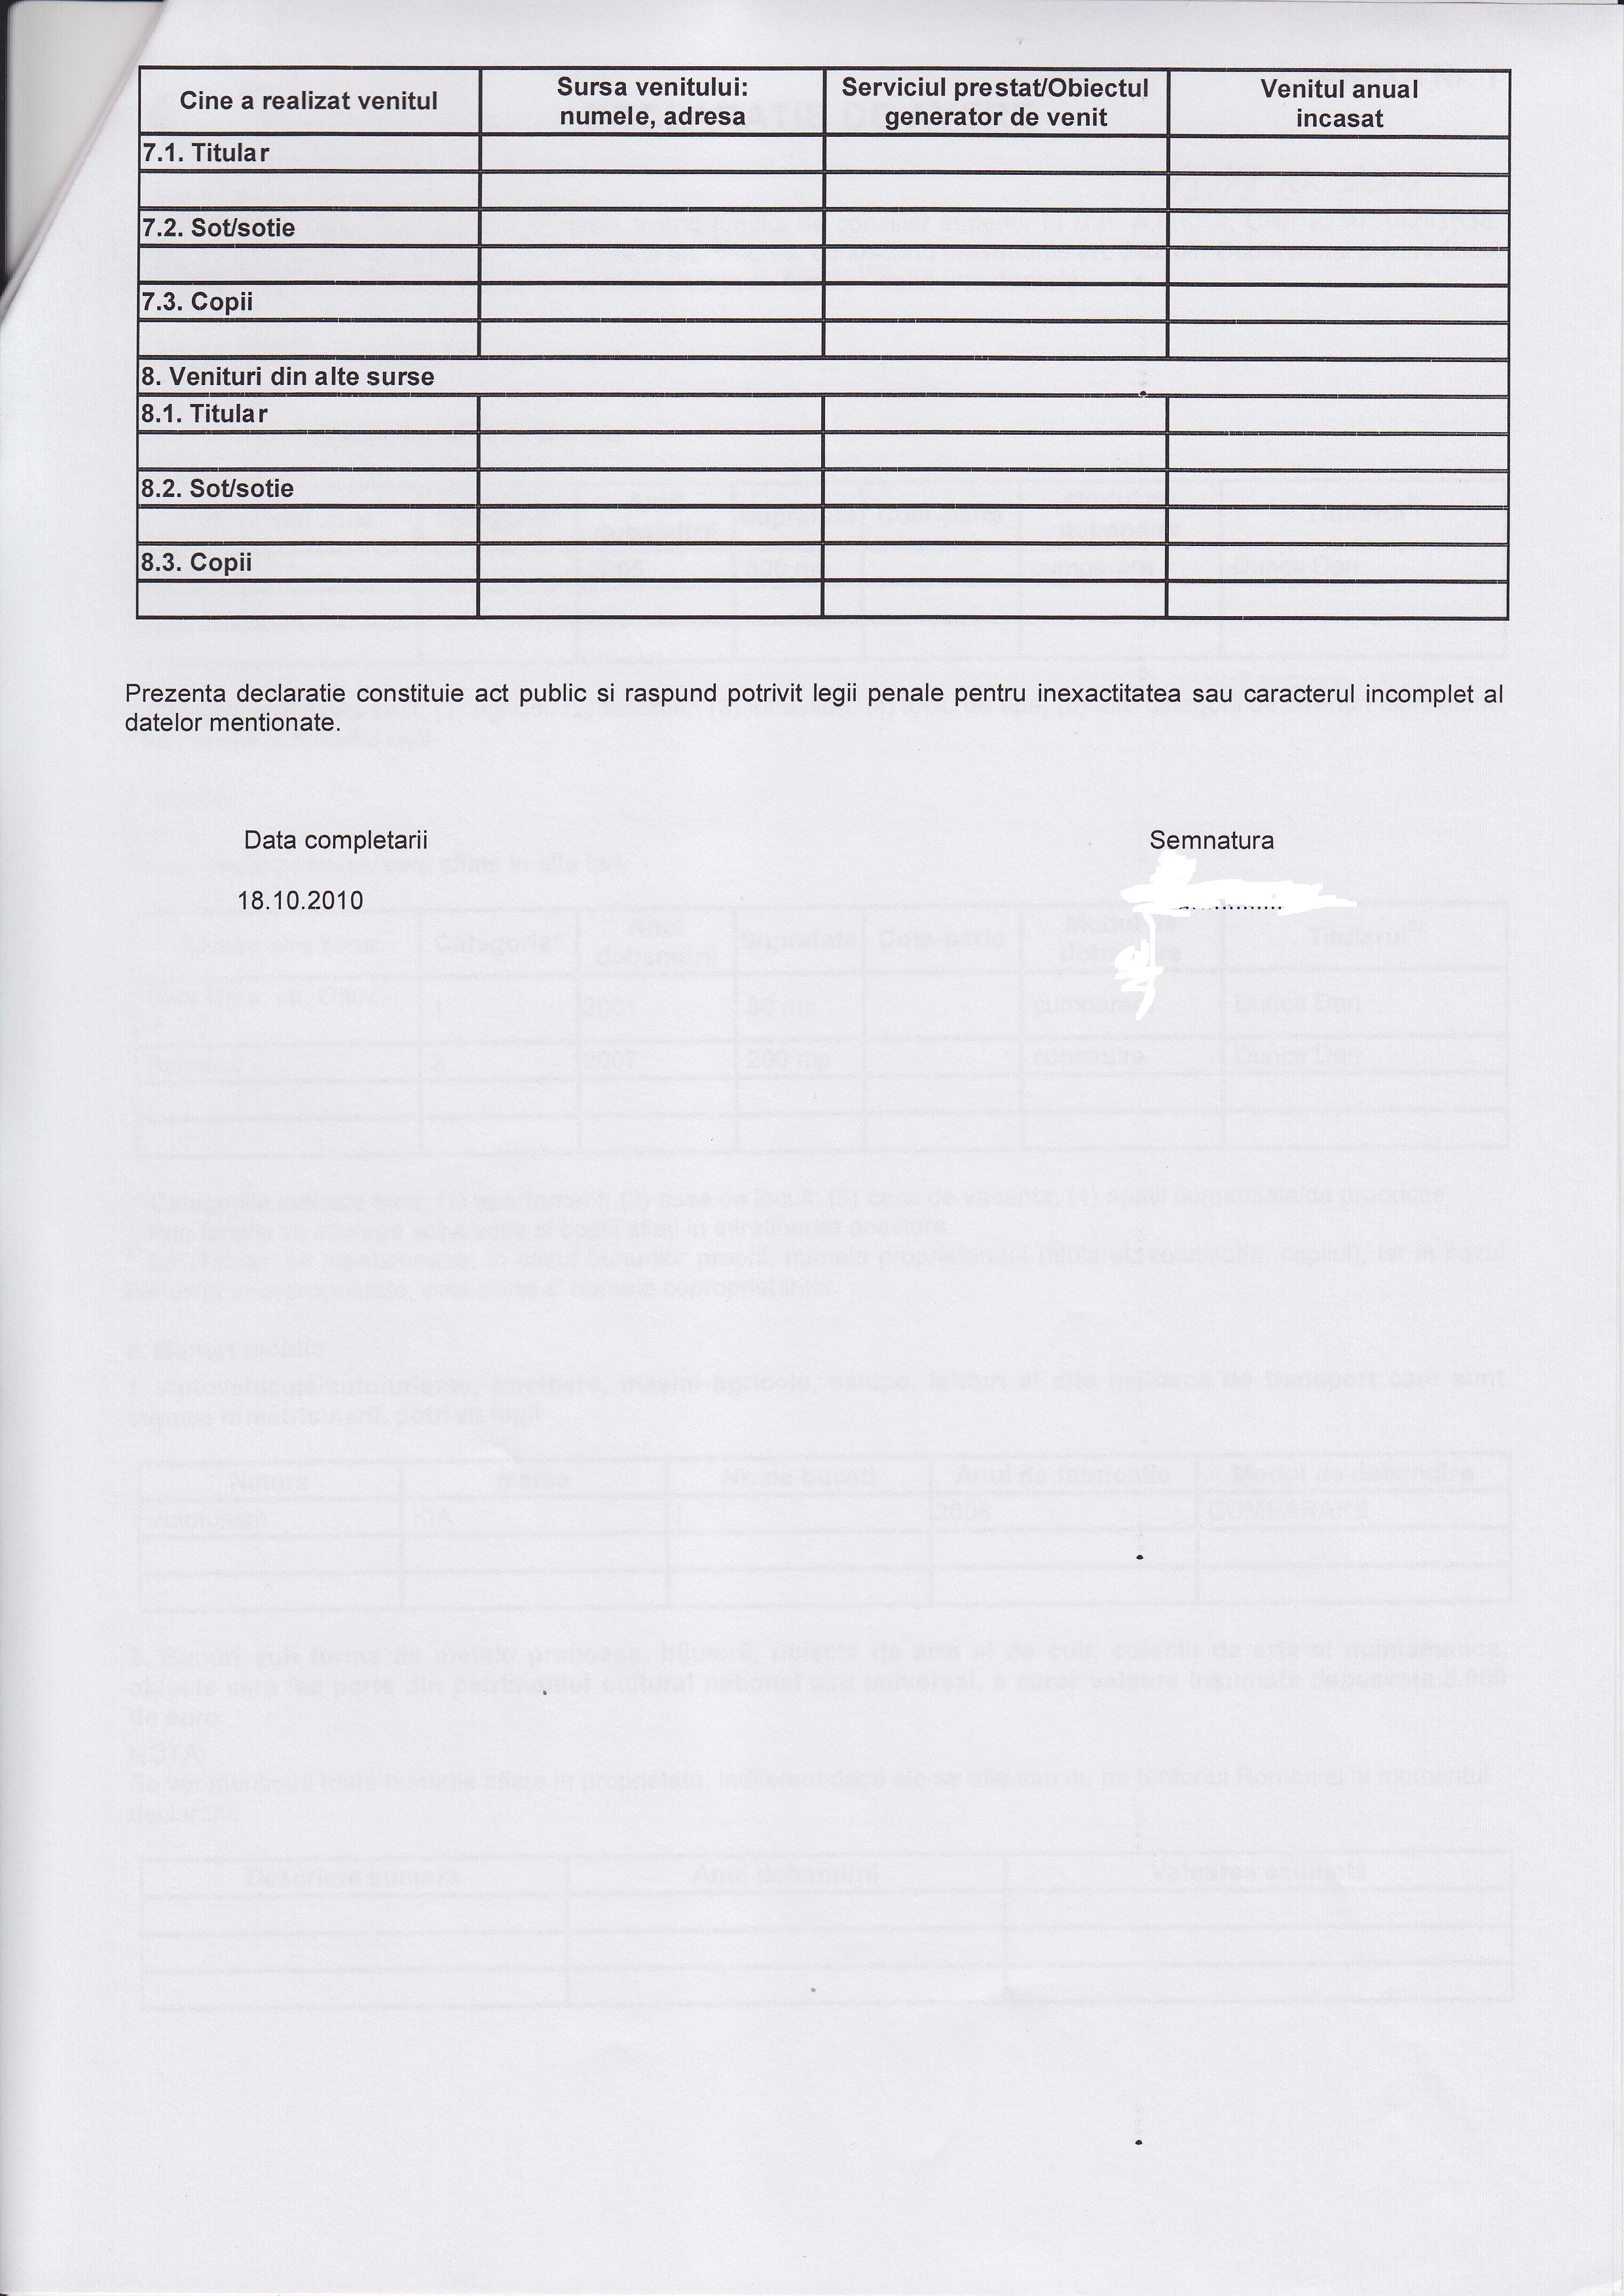 Declaratia de avere si de interese din data 20.12.2010 - pagina 4 din 6